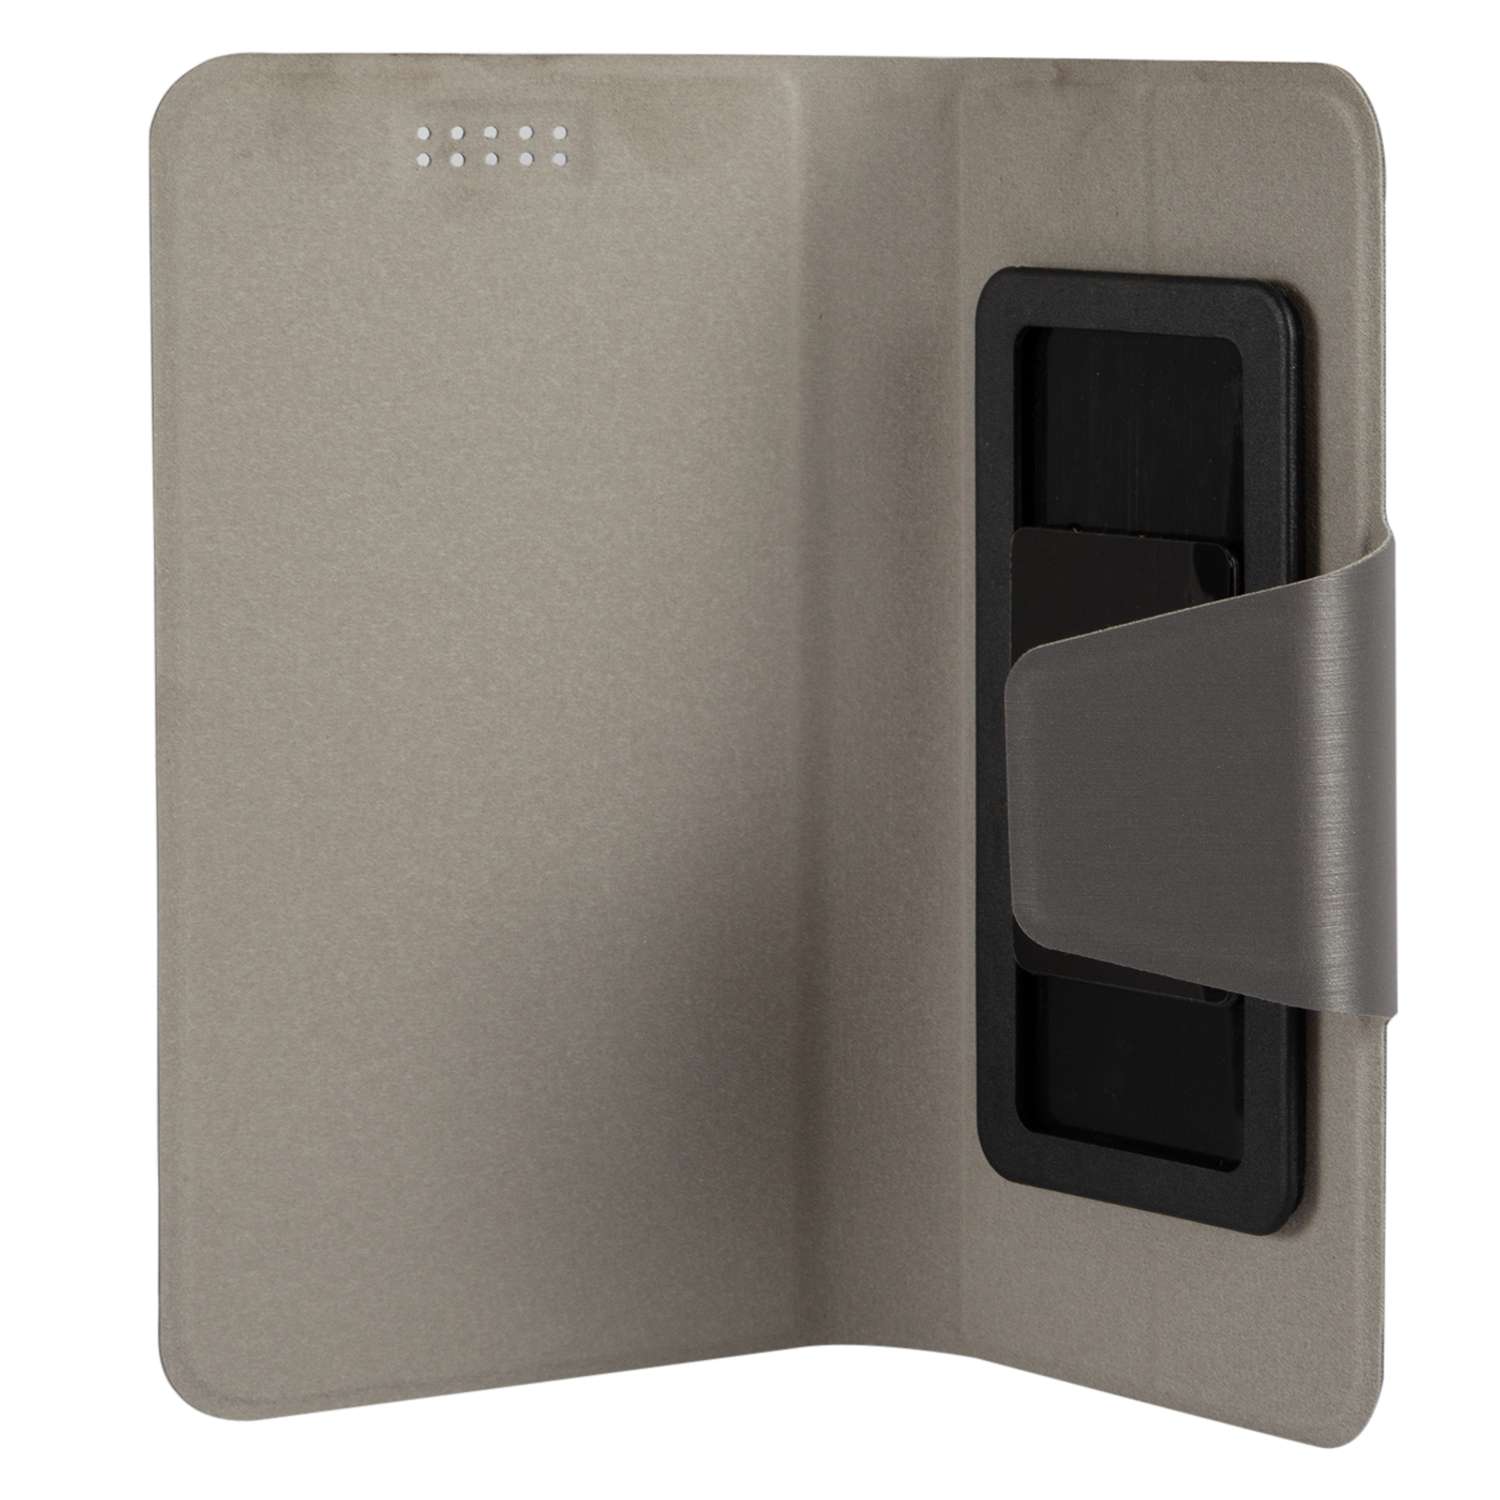 Чехол универсальный iBox UniMotion для телефонов 3.5-4.5 дюйма серый - фото 3